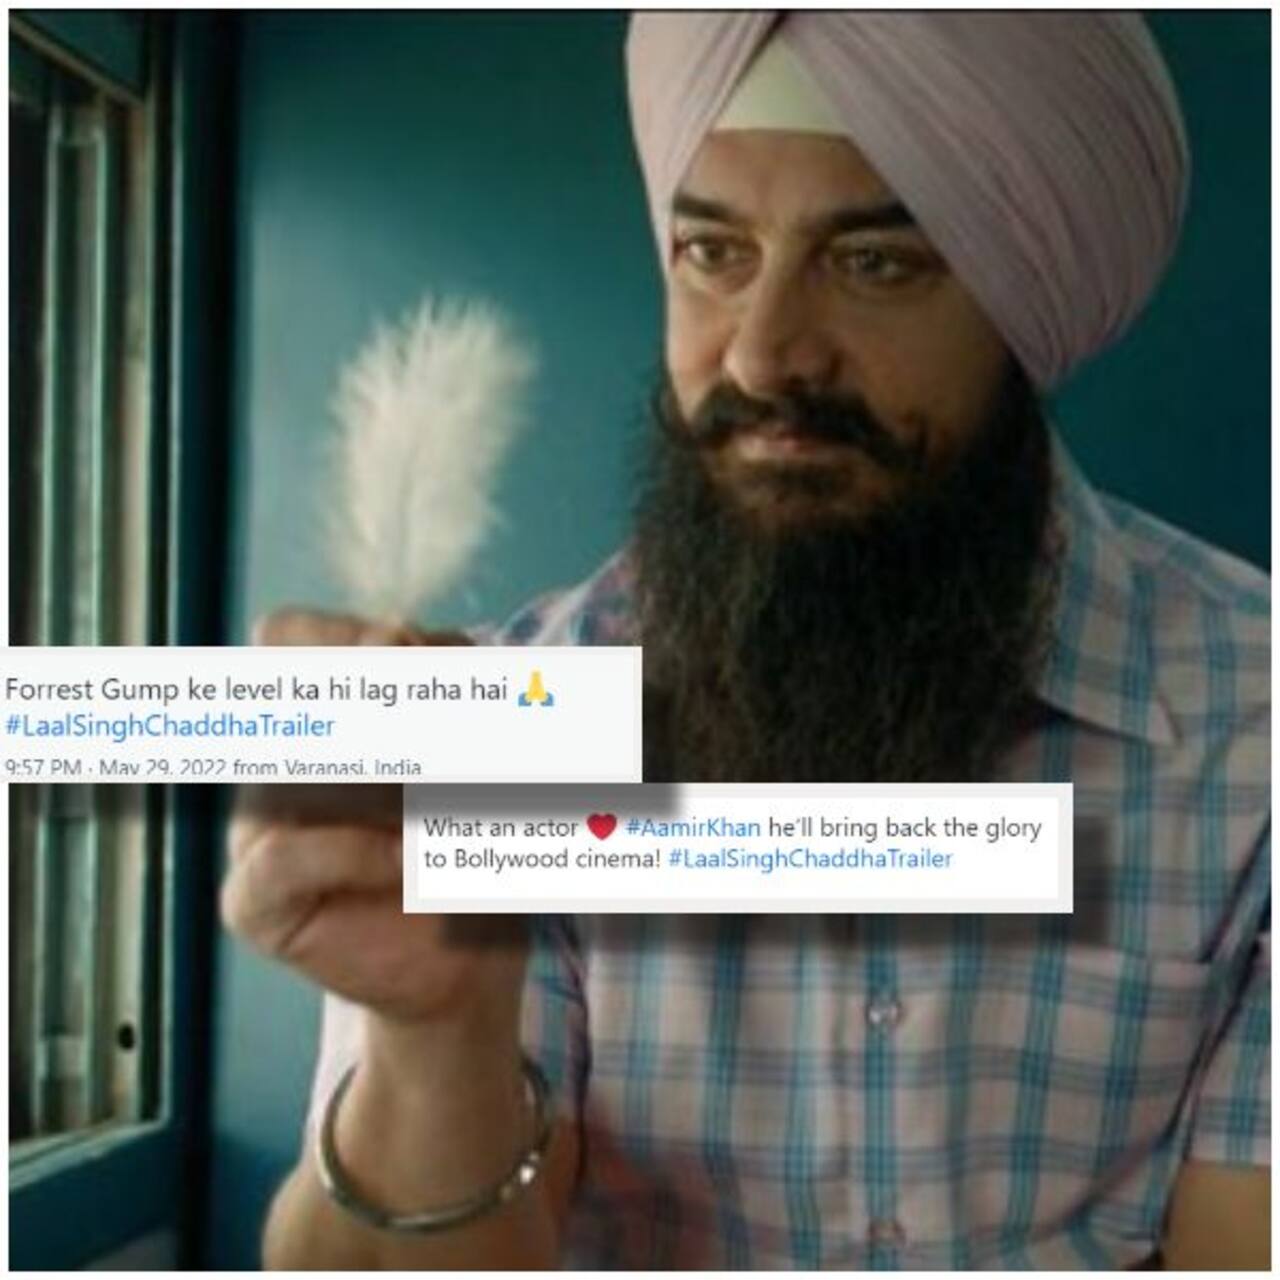 Laal Singh Chaddha Trailer Fans Reaction: फैंस बोले, 'बॉलीवुड की इज्जत बचाएंगे' आमिर खान, तो किसी को ठंडा लगा ट्रेलर